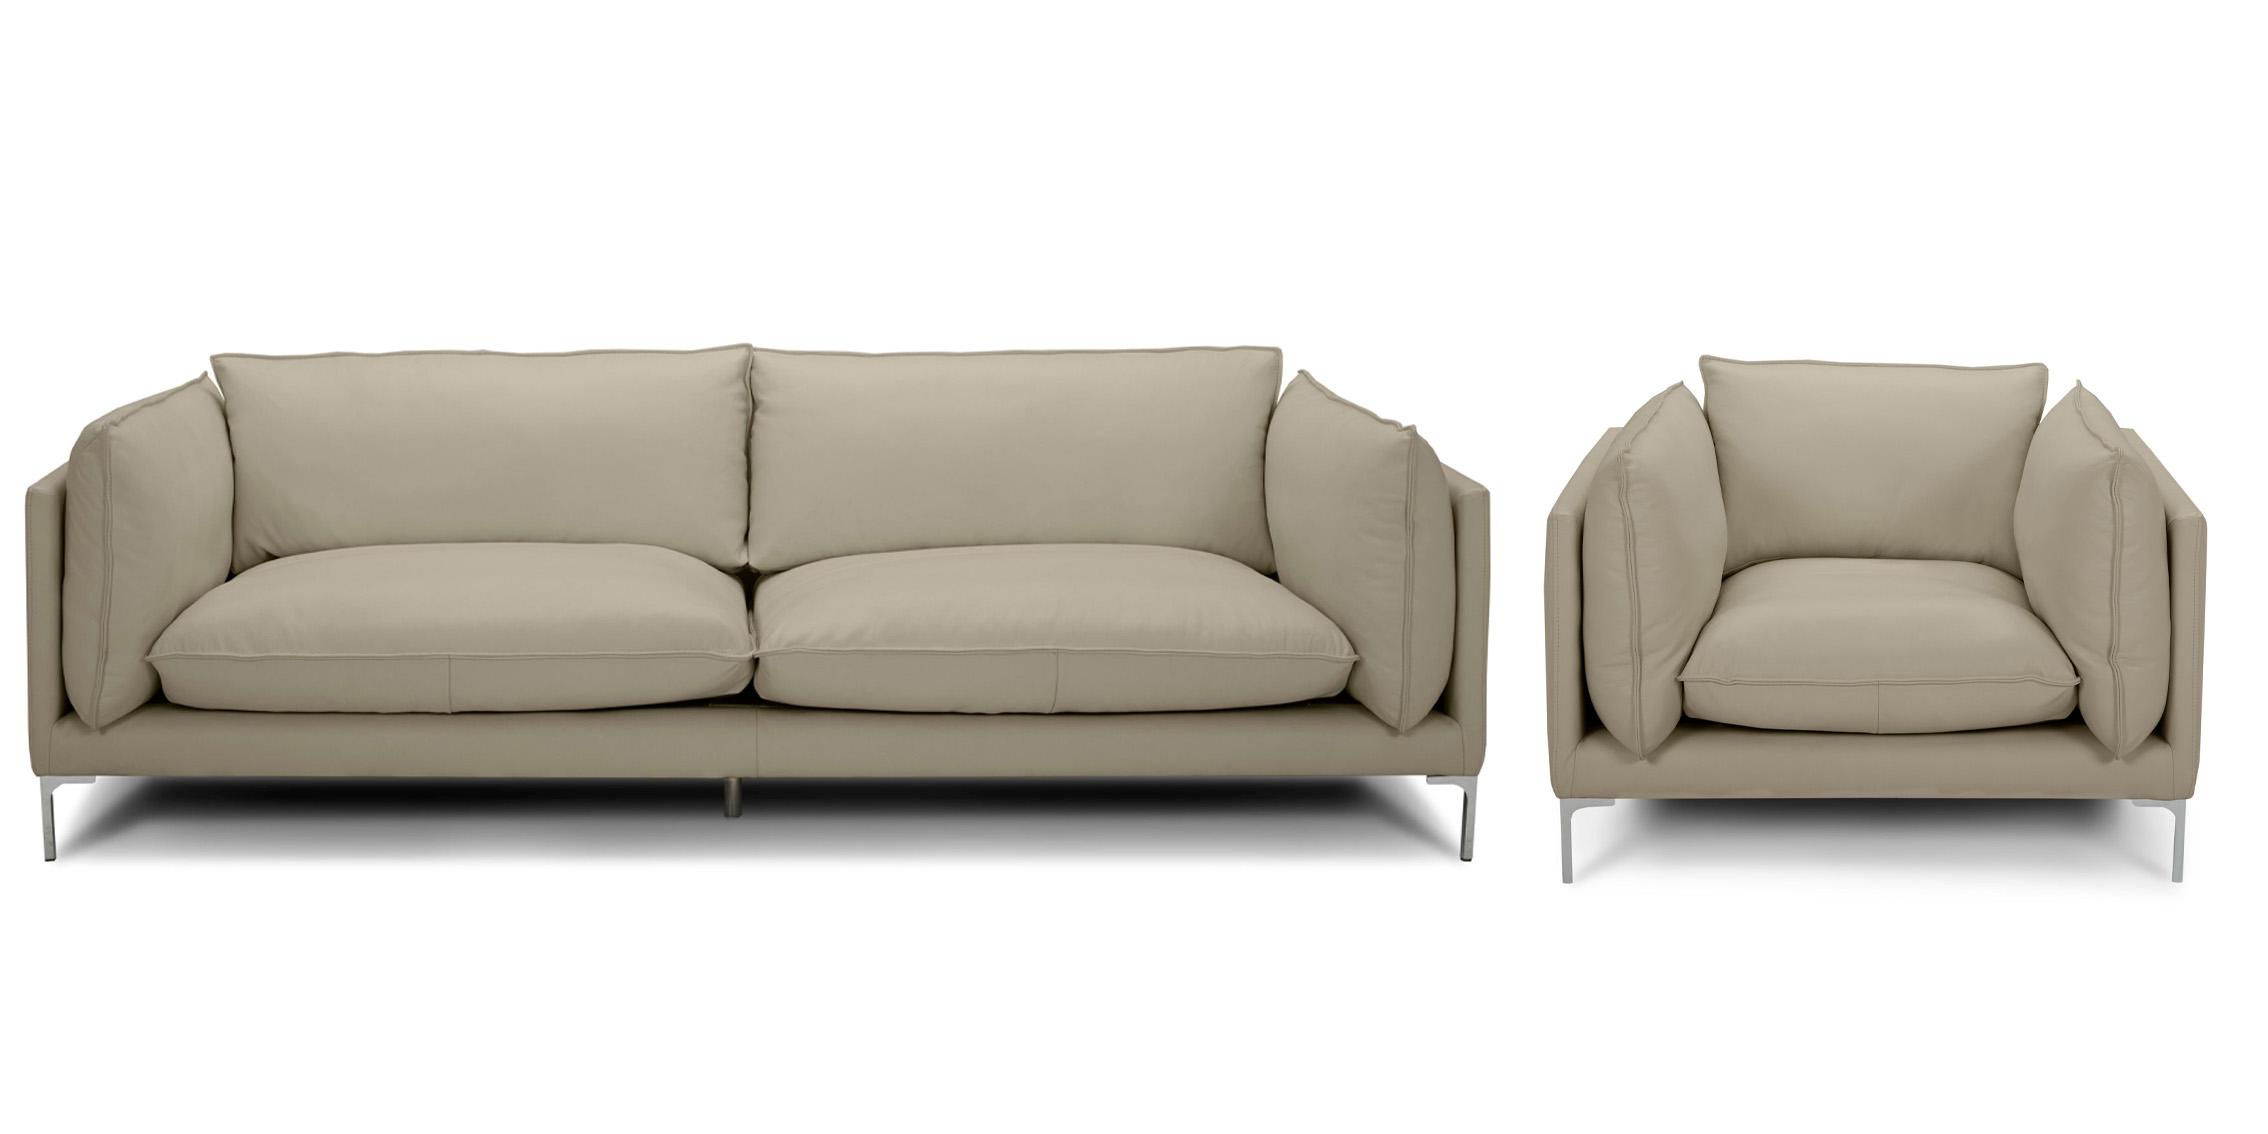 Contemporary, Modern Sofa Set VGKKKF2627-TP-S-Set-2 VGKKKF2627-TP-S-Set-2 in Taupe Full Leather